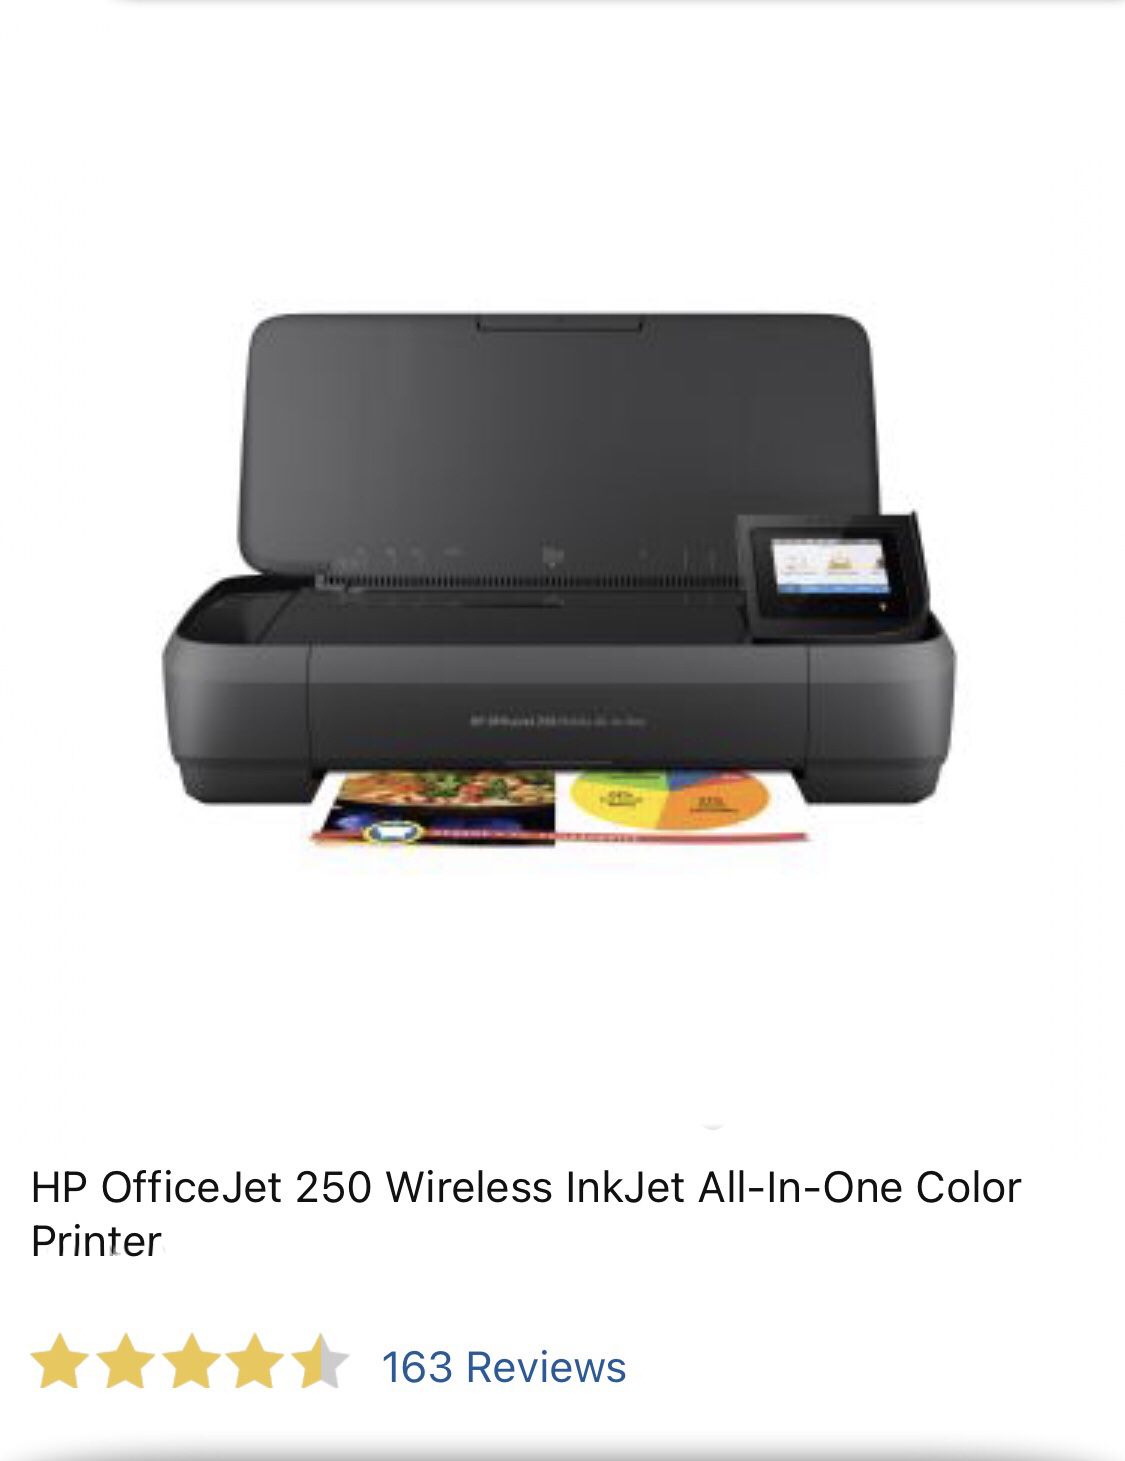 HP OfficeJet 250 wireless Printer